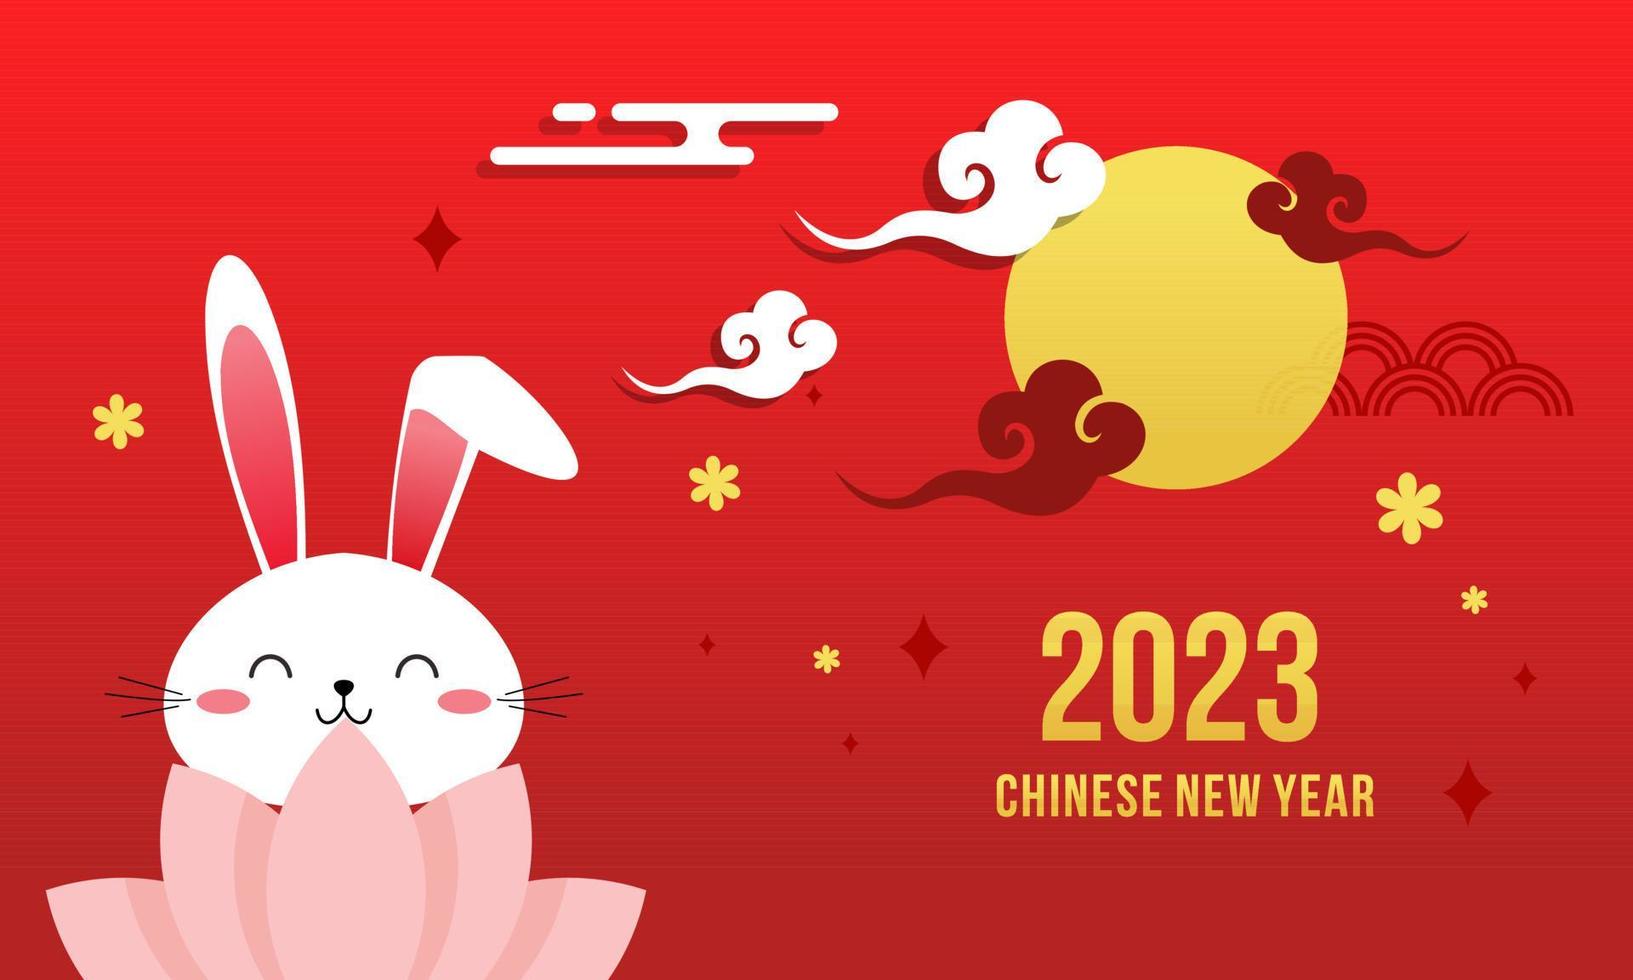 frohes chinesisches neujahr 2023 jahr des kaninchentierkreis-logohintergrundes vektor